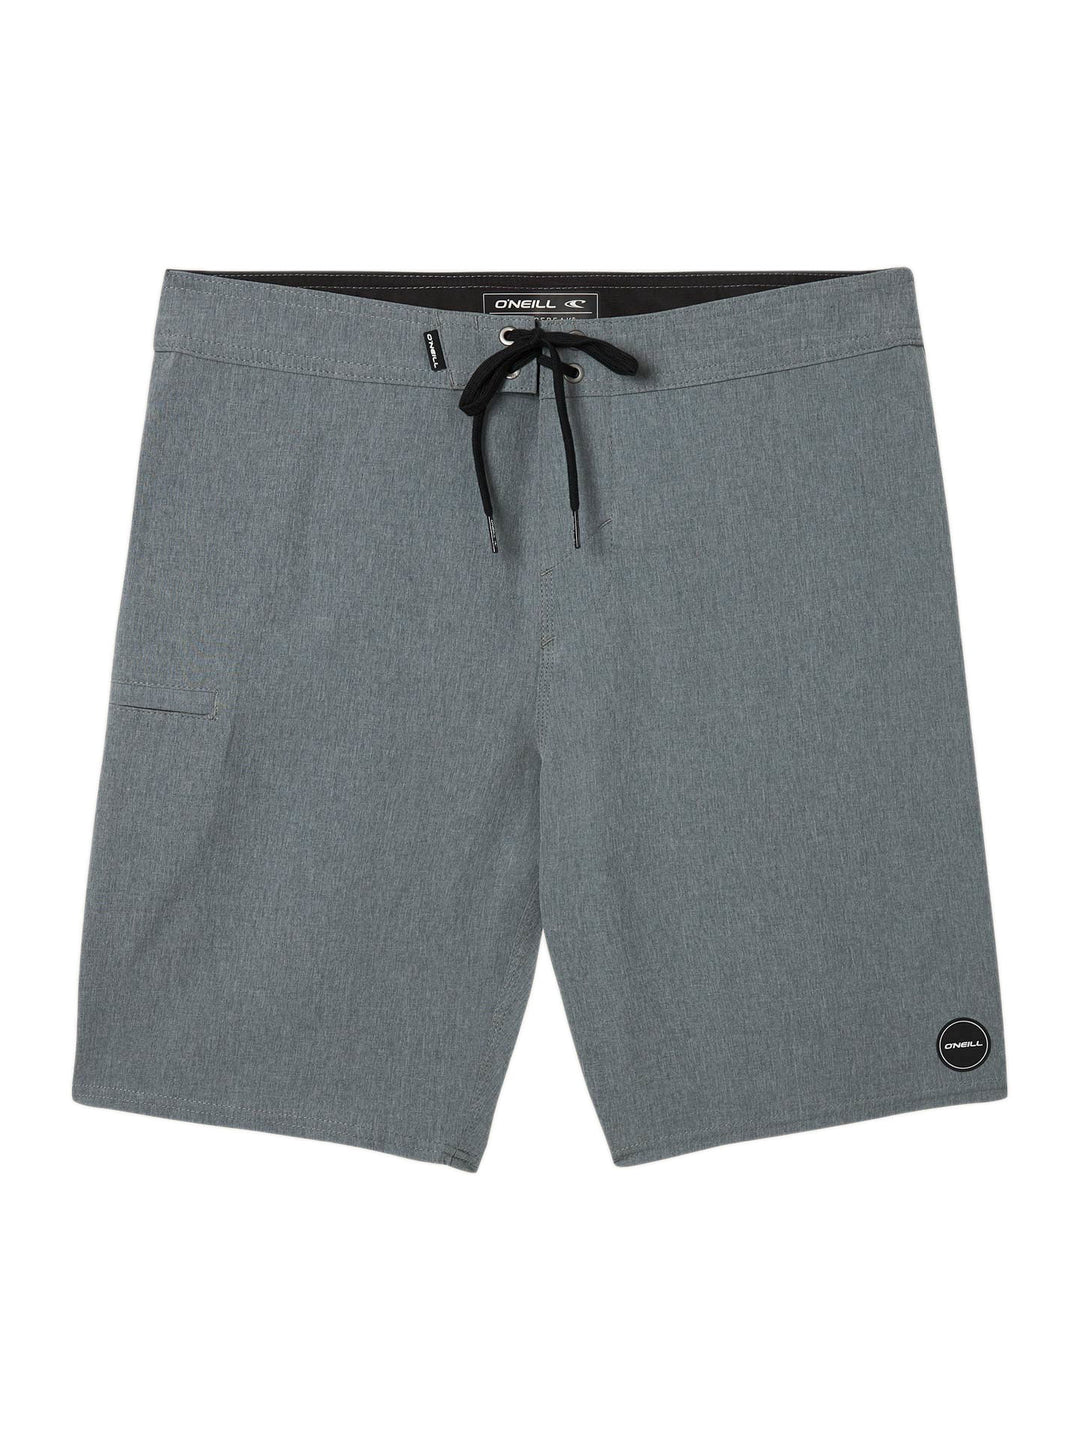 O'Neill Men's Hyperfreak Solid Board Shorts Gray Size 32